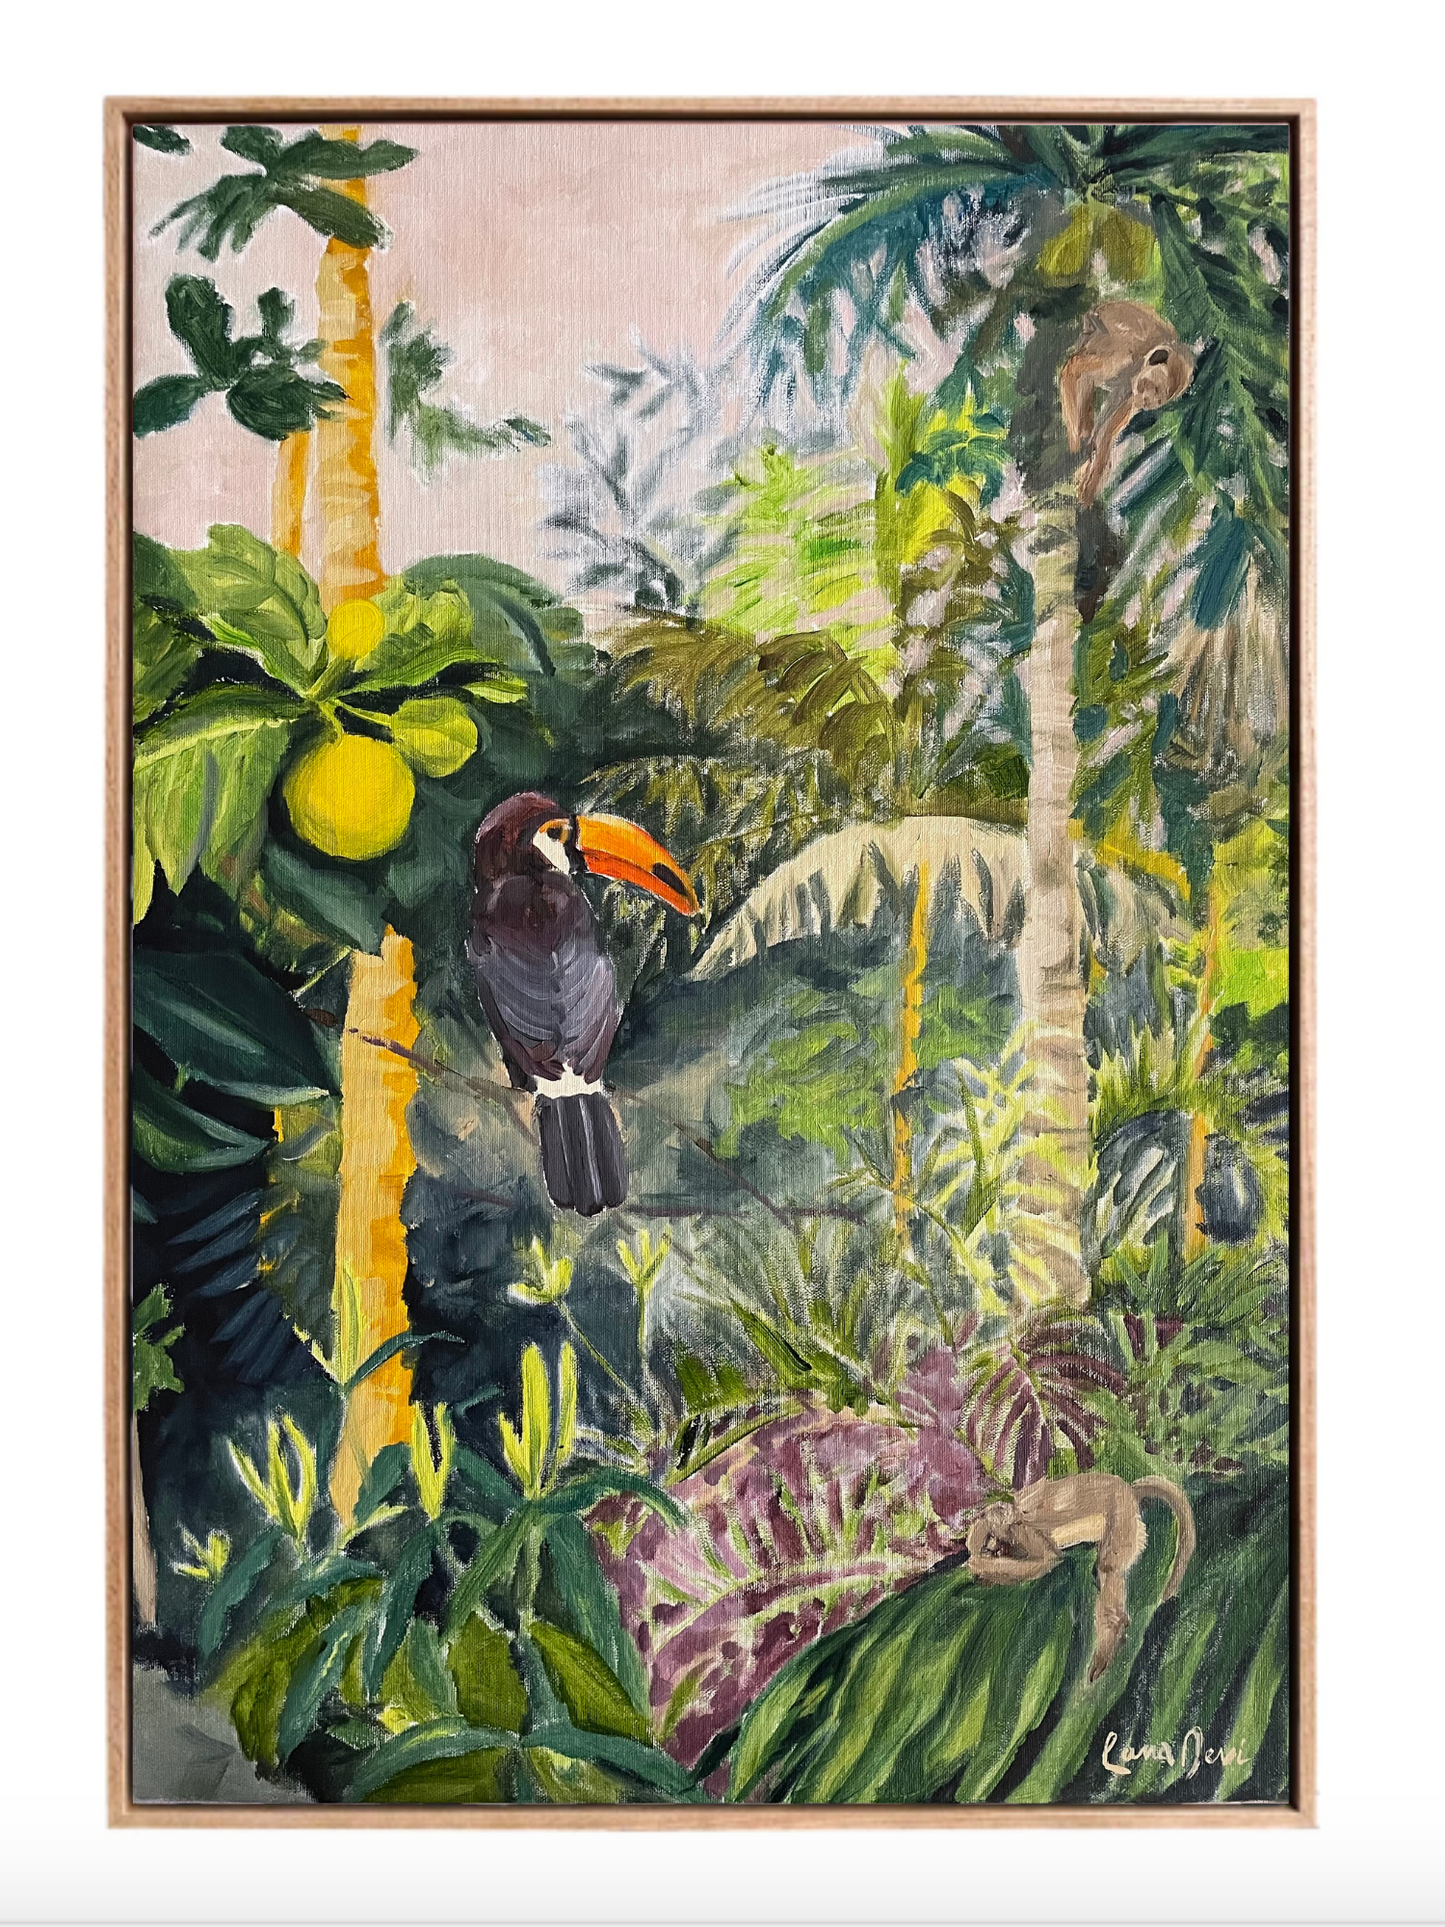 tropical zen artwork series by Lana Devi